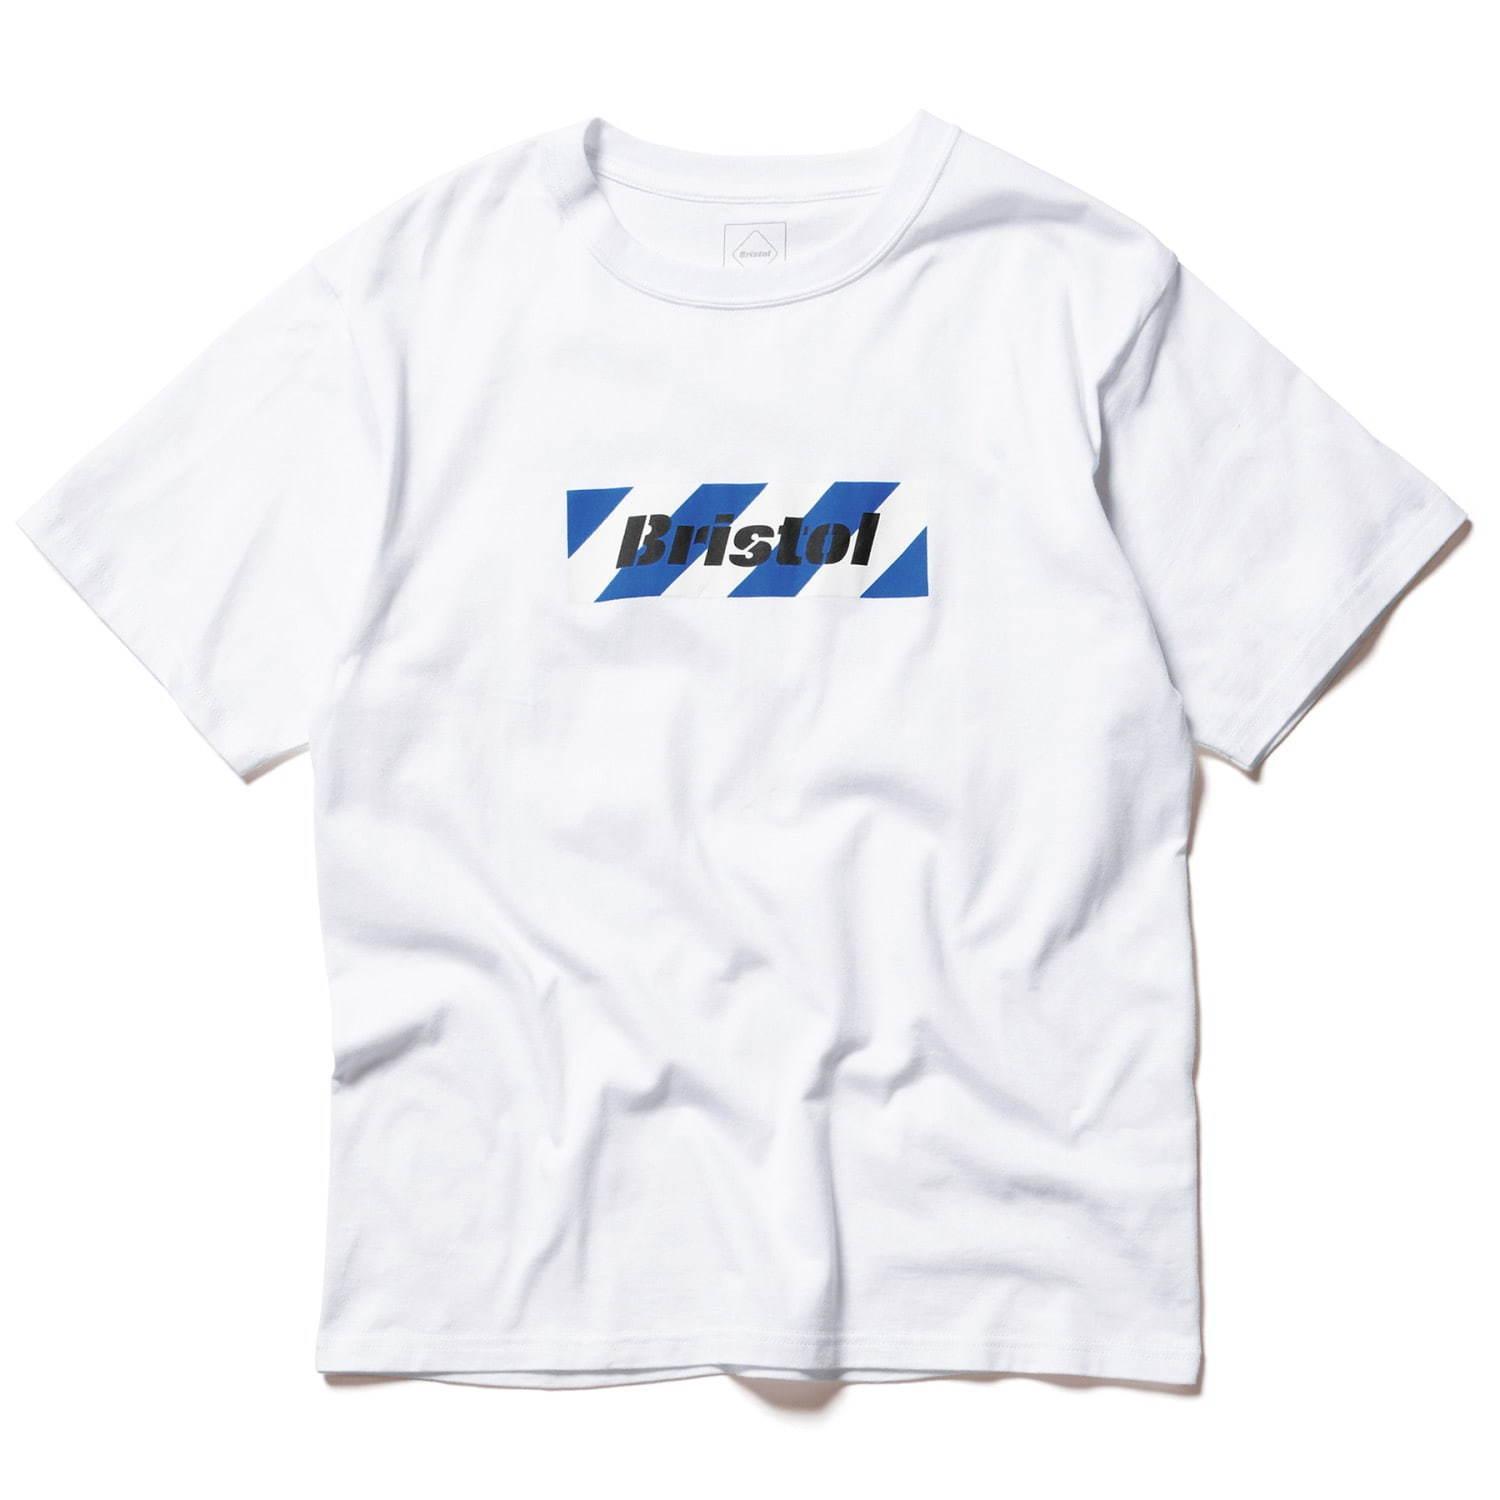 エフシーレアルブリストルの新作Tシャツ、バイアスストライプやステンシル調ロゴをプリント コピー